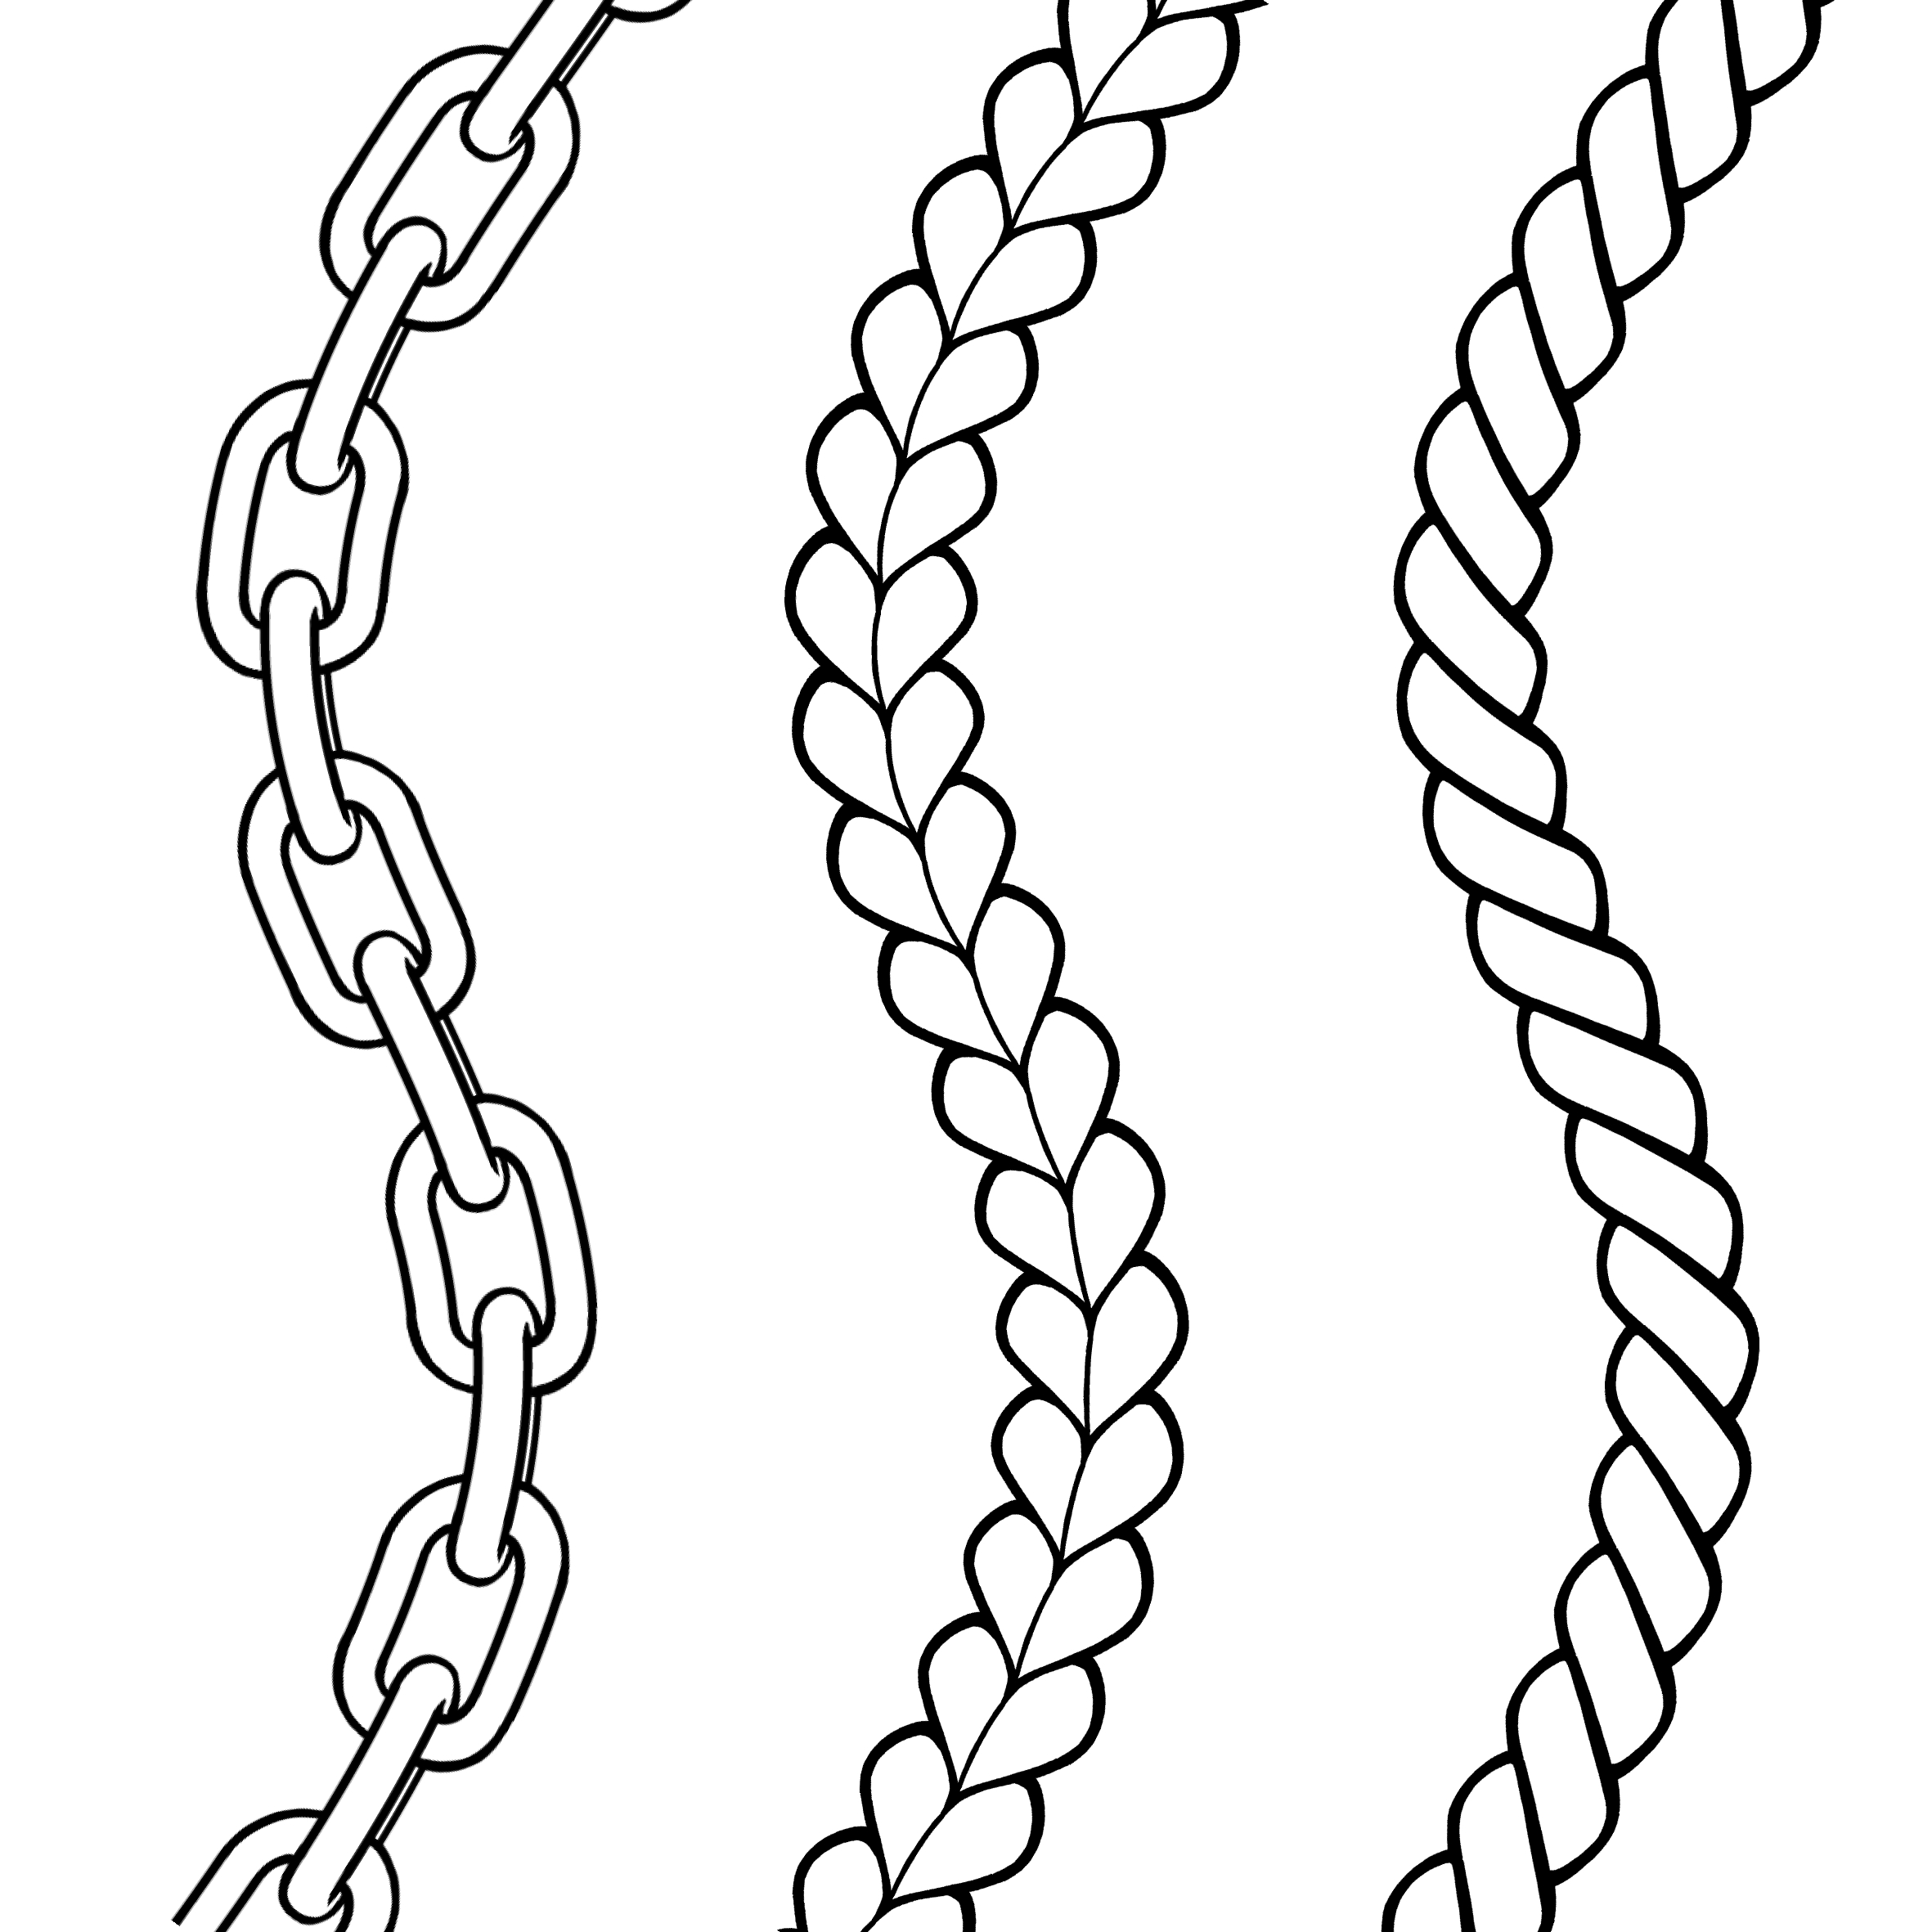 铁链笔刷(图左) 